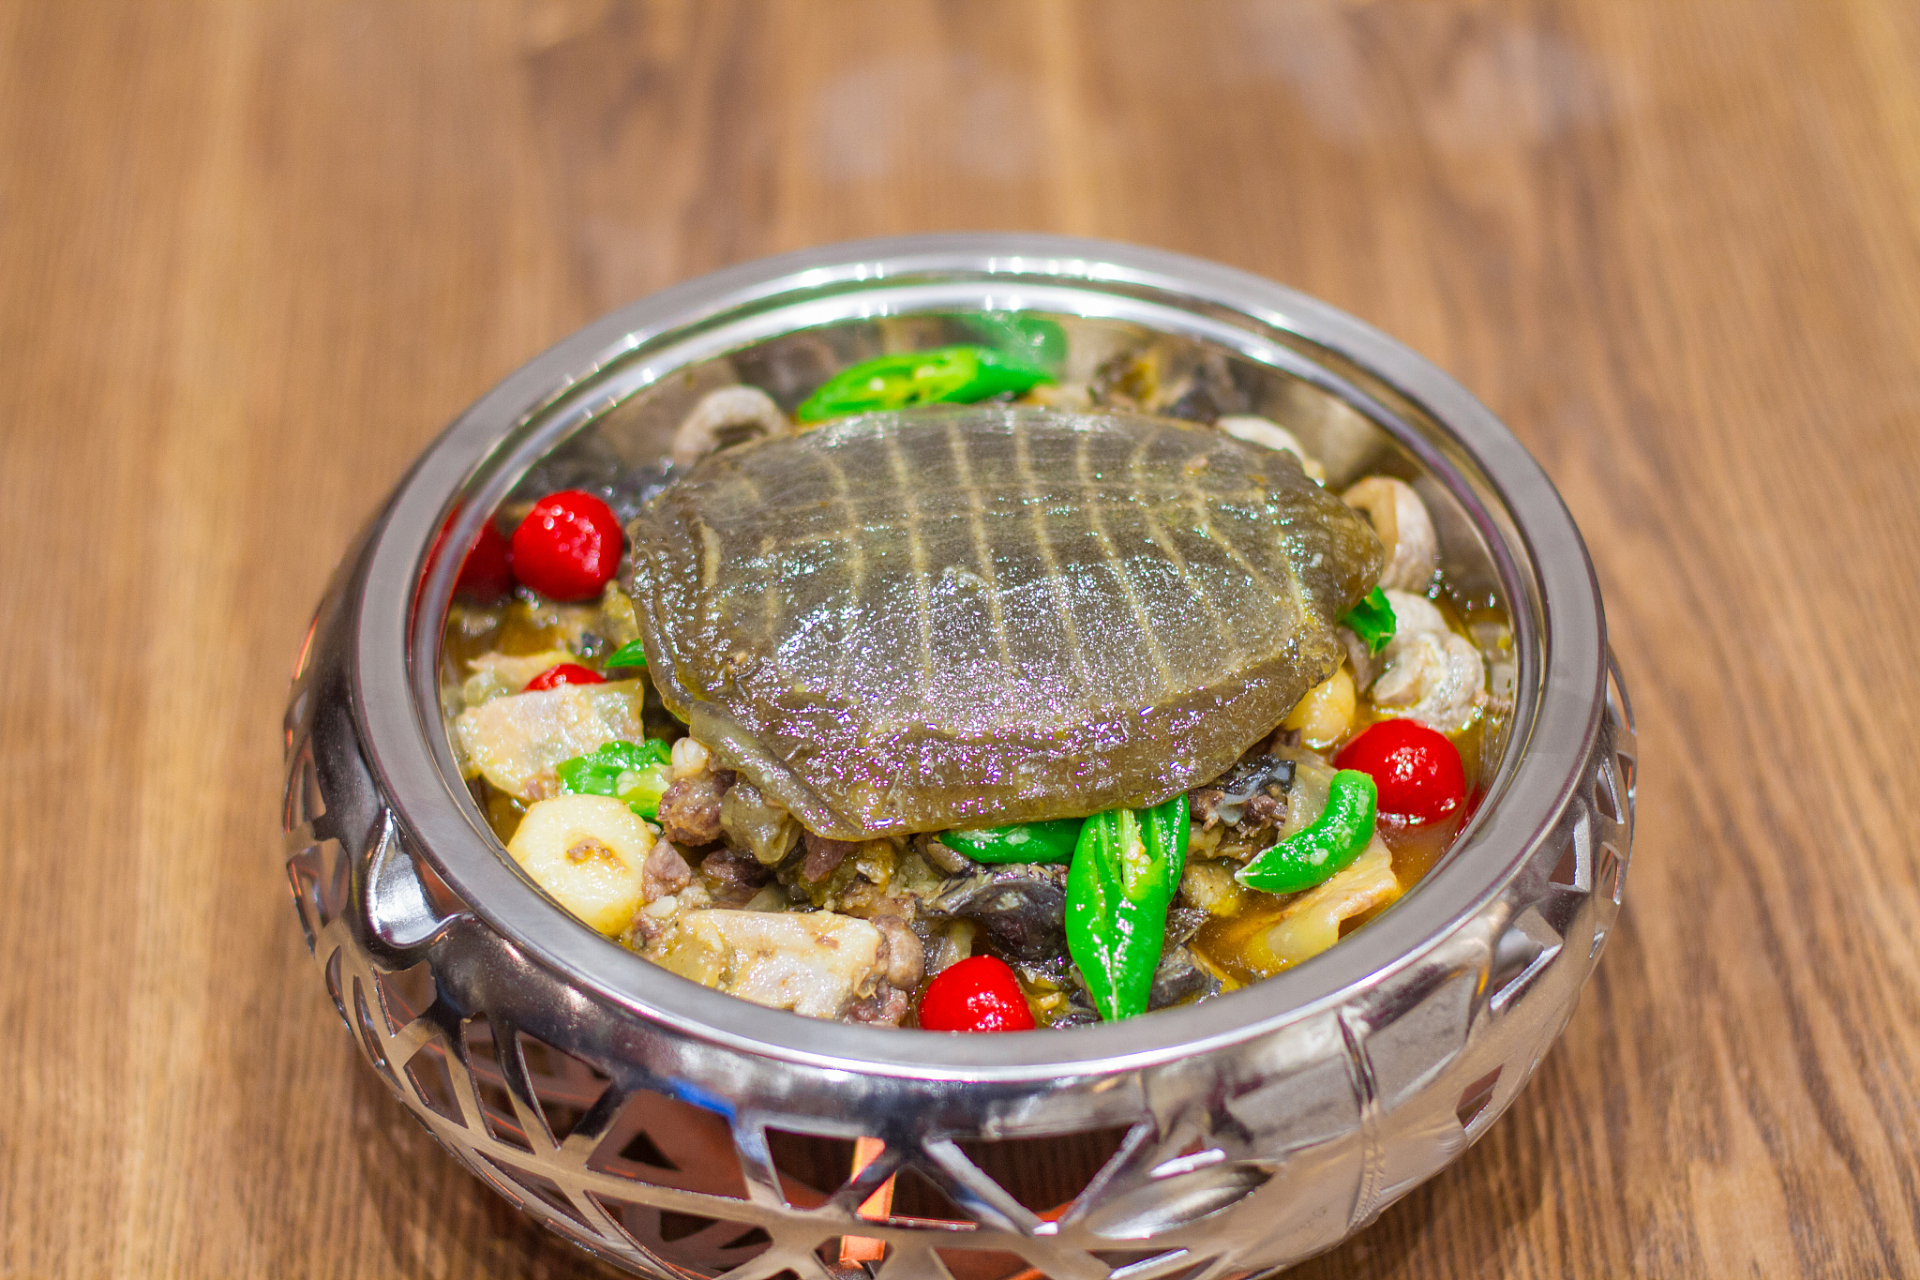 甲鱼炒鸡是一道结合甲鱼鲜嫩和鸡肉香滑的特色家常菜,通过挑选食材